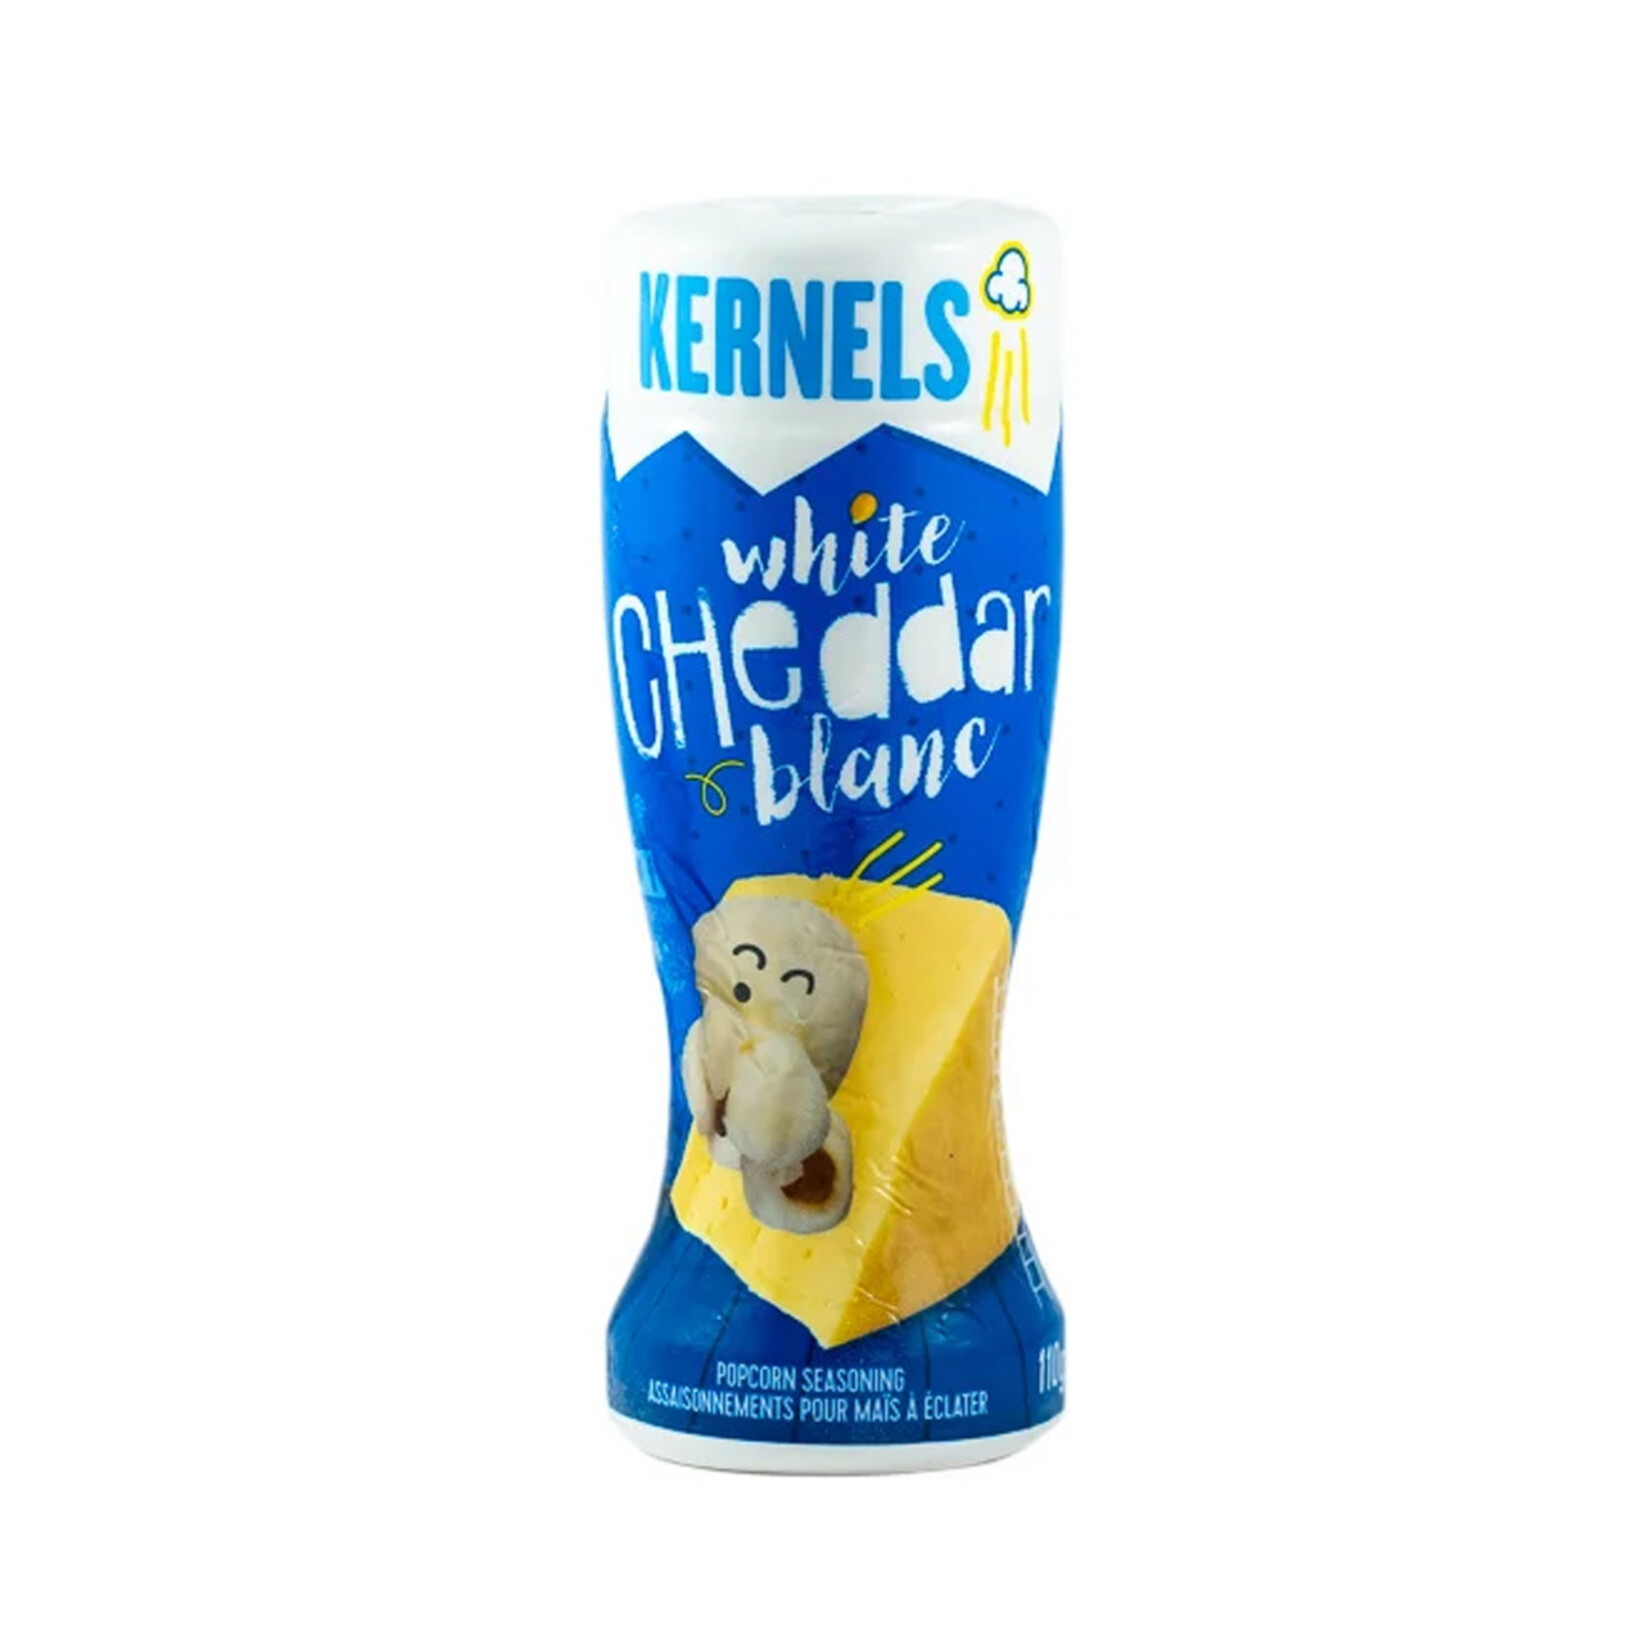 Kernels White cheddar popcorn seasoning 110g